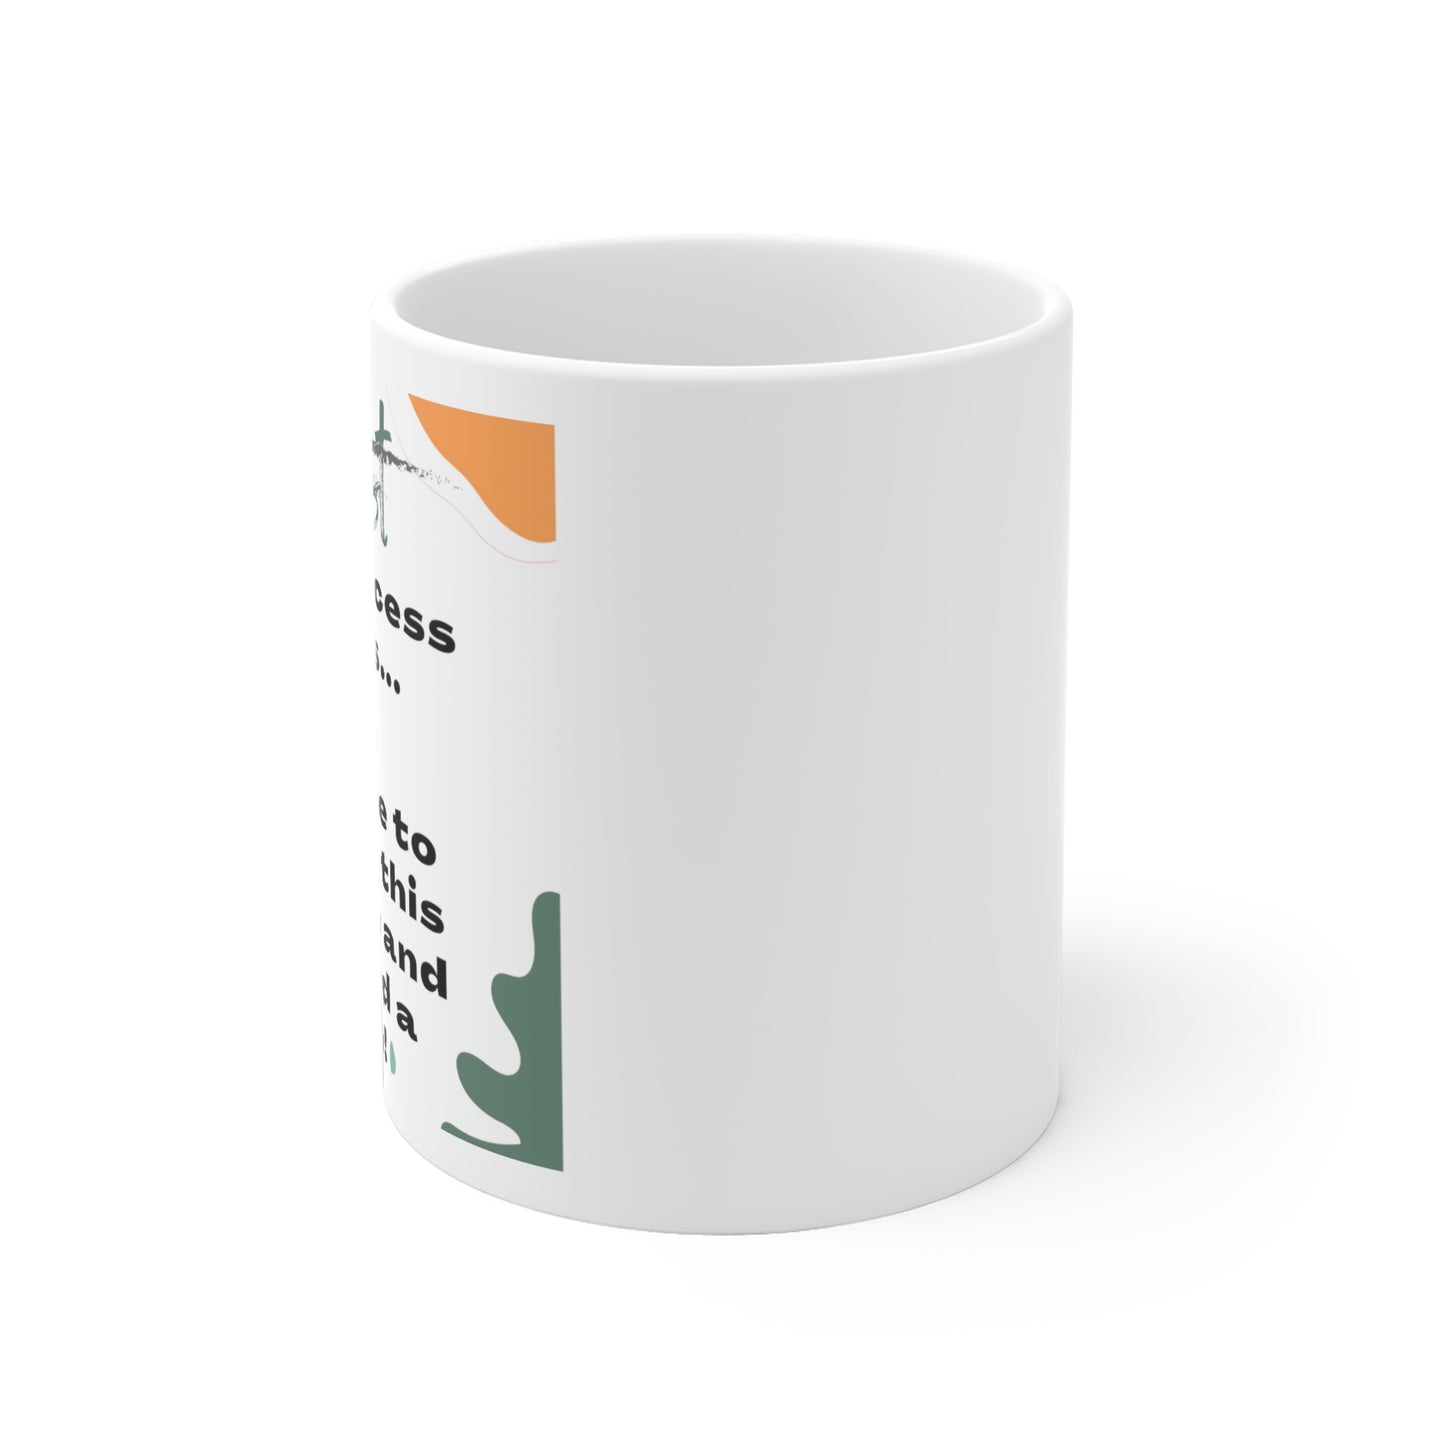 Accent Ceramic Mug, 11 OZ